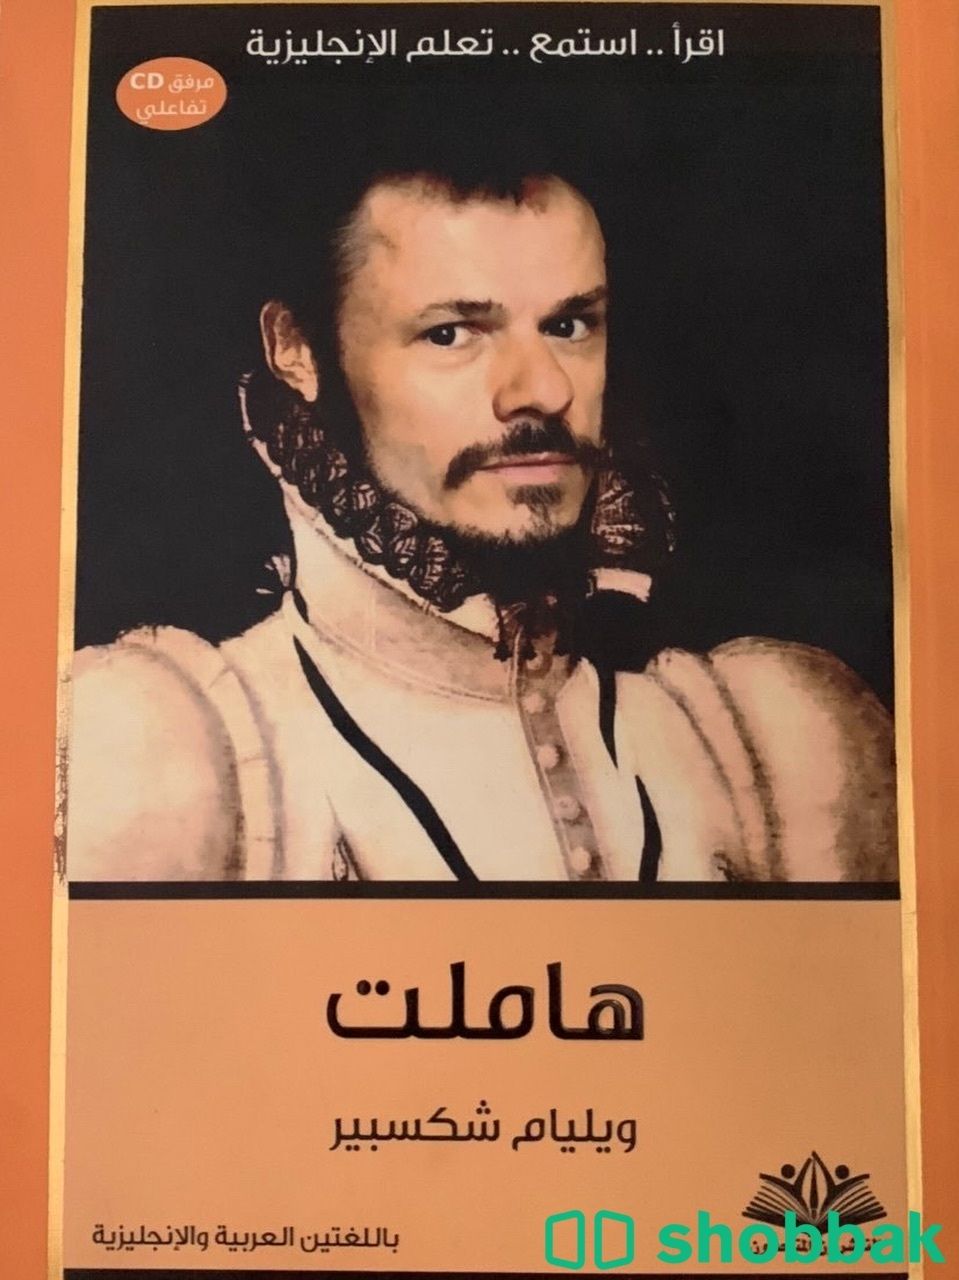 كتب جديده للبيع في حوطة بني تميم  Shobbak Saudi Arabia